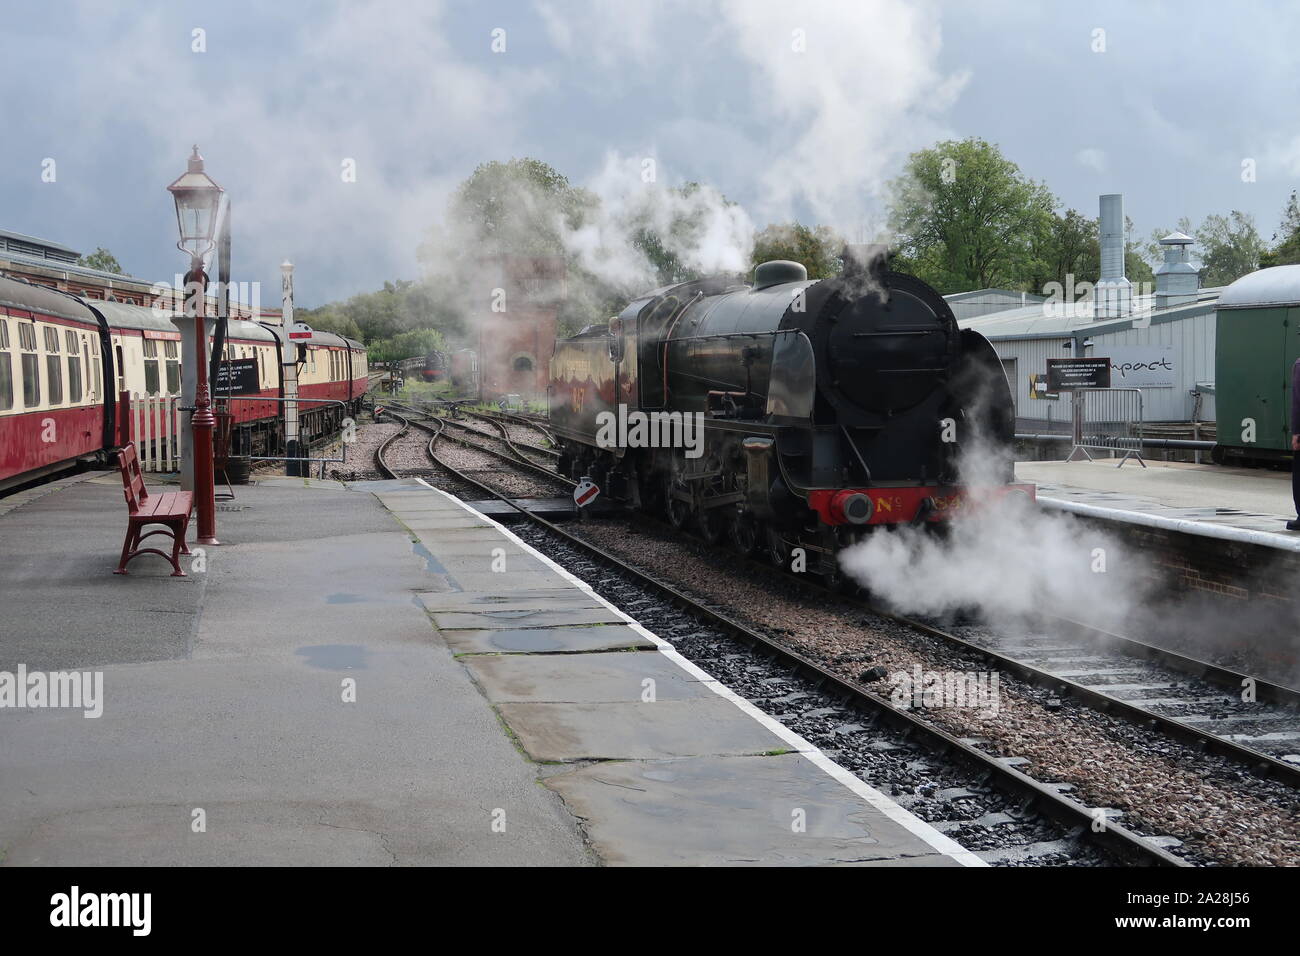 Tren de vapor llegando a una plataforma de la estación. Foto de stock